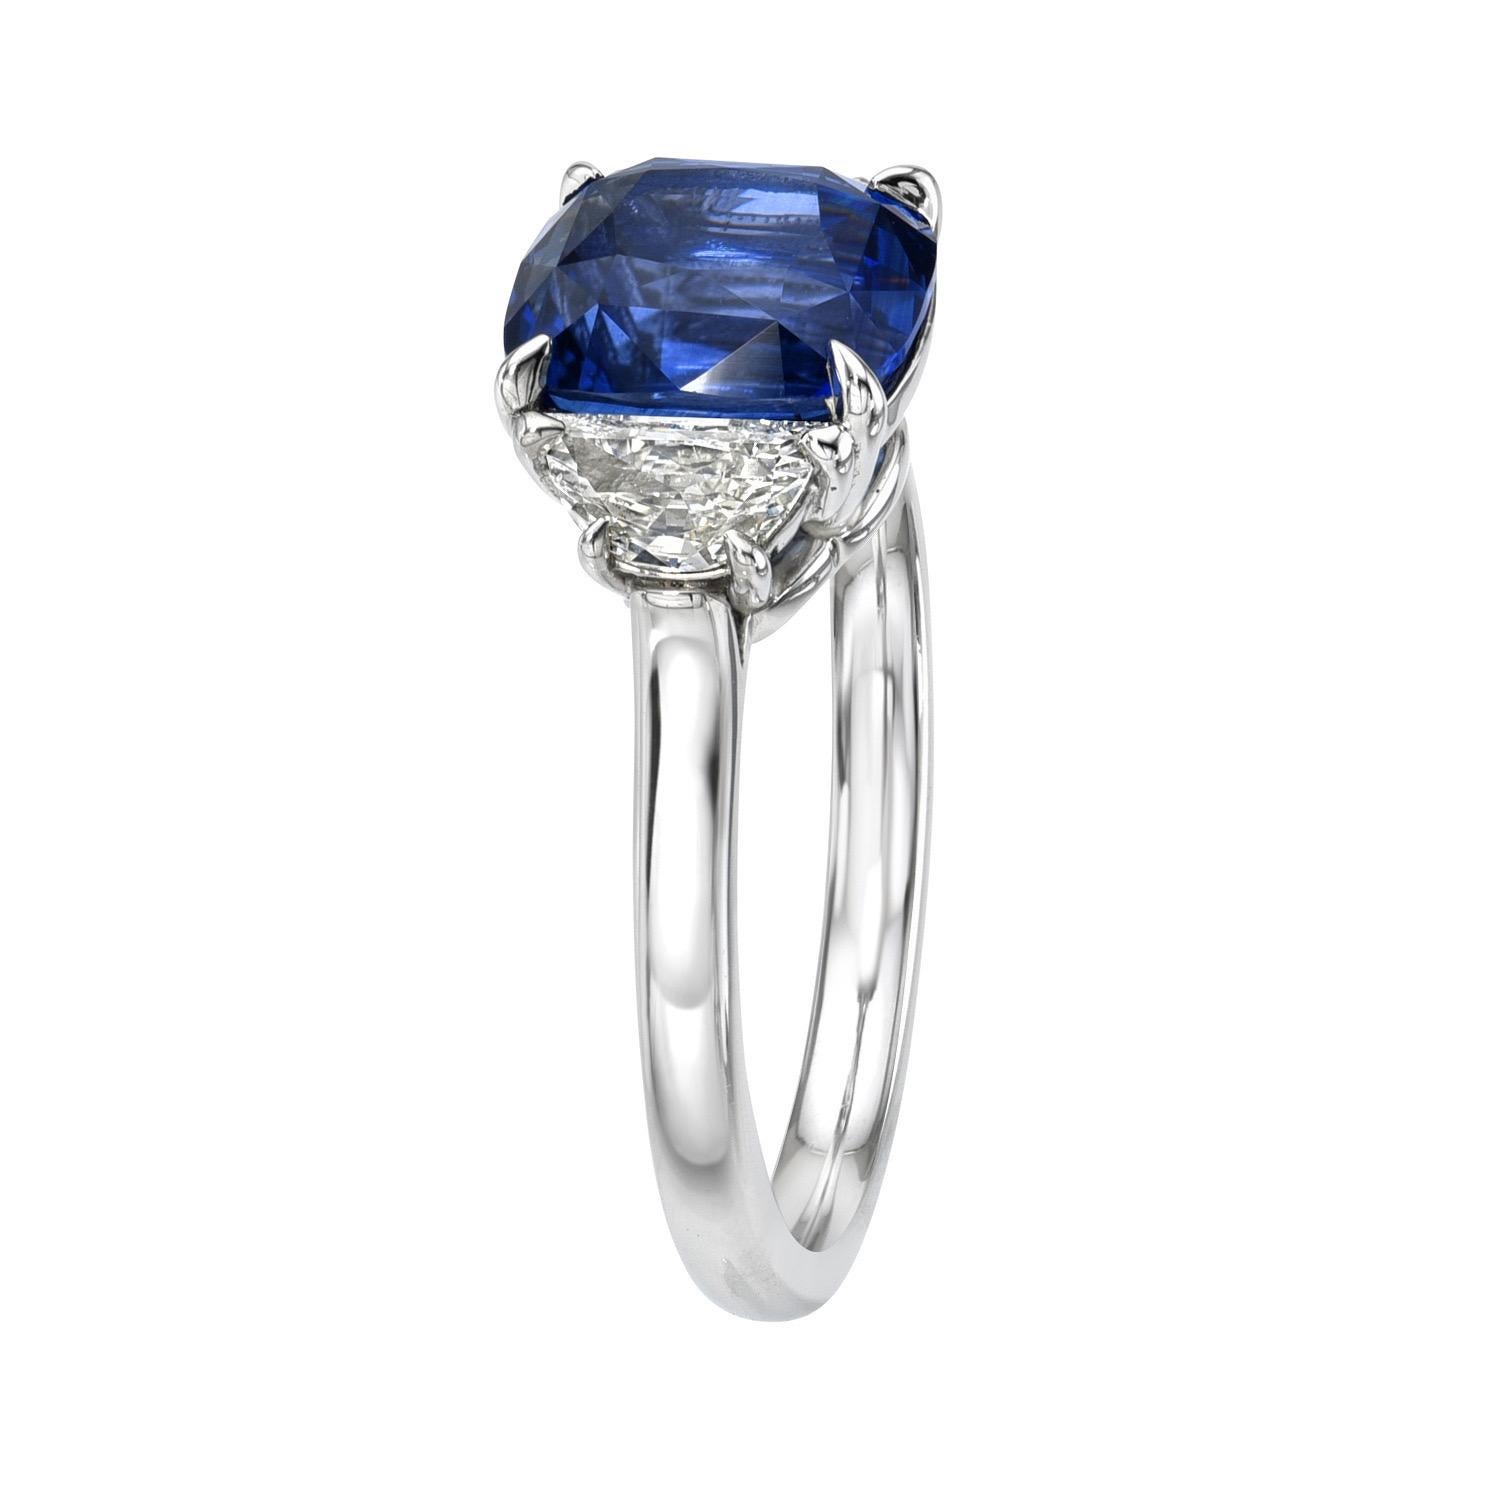 Zeitloser Ring aus Platin mit drei Steinen und einem blauen Ceylon-Saphir von 3,06 Karat, flankiert von einem Paar Halbmond-Diamanten von 0,36 Karat, E/VS.
Ring Größe 6. Die Größenänderung ist auf Anfrage möglich.
Der GIA-Edelsteinbericht ist der